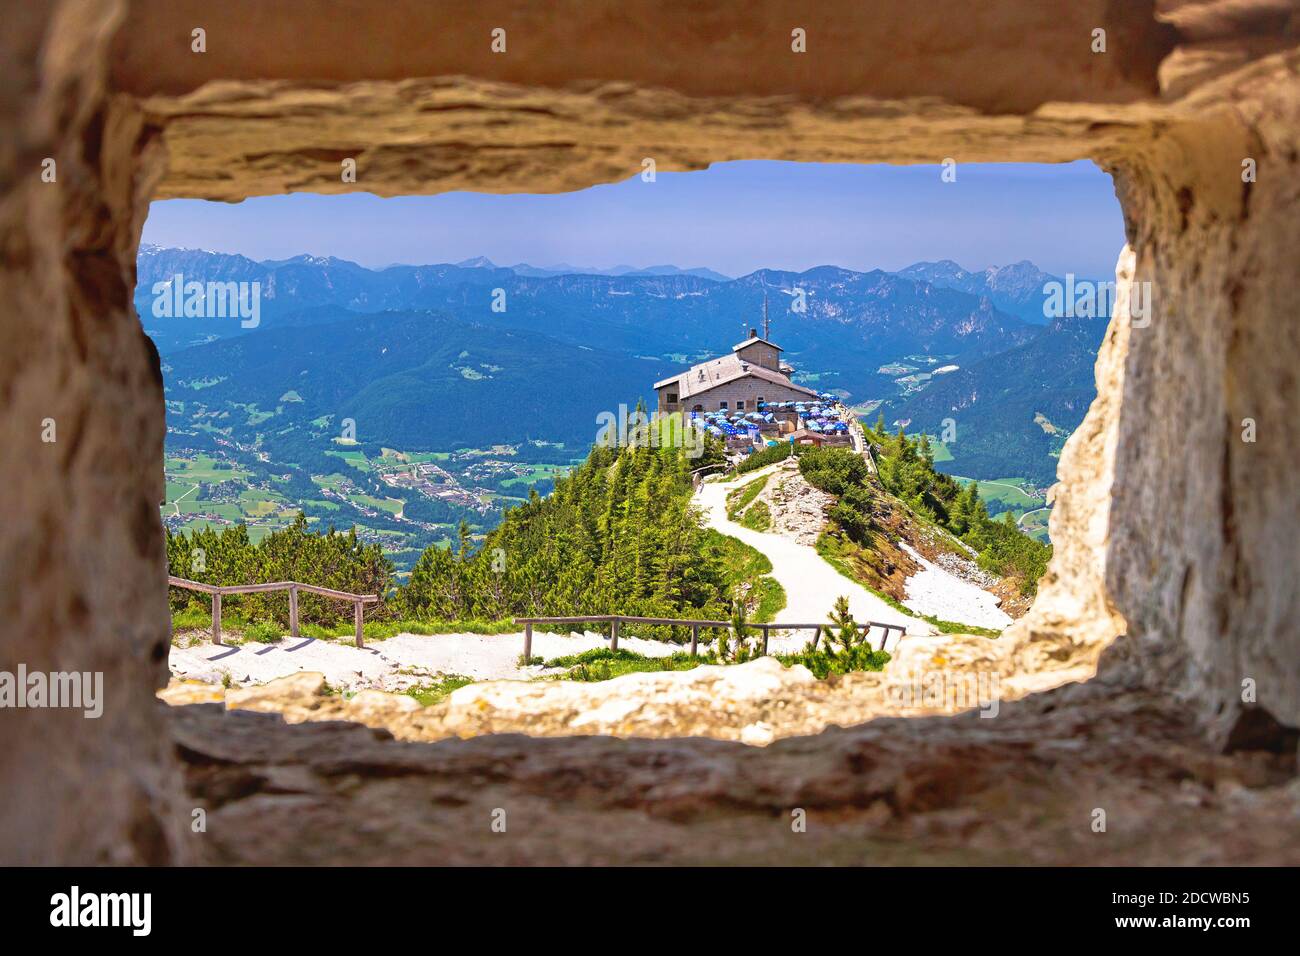 Eagle's Nest o Kehlsteinhaus nascondono sulla roccia sopra la vista del paesaggio alpino attraverso la finestra di pietra, Berchtesgadener Land, Baviera, Germania Foto Stock